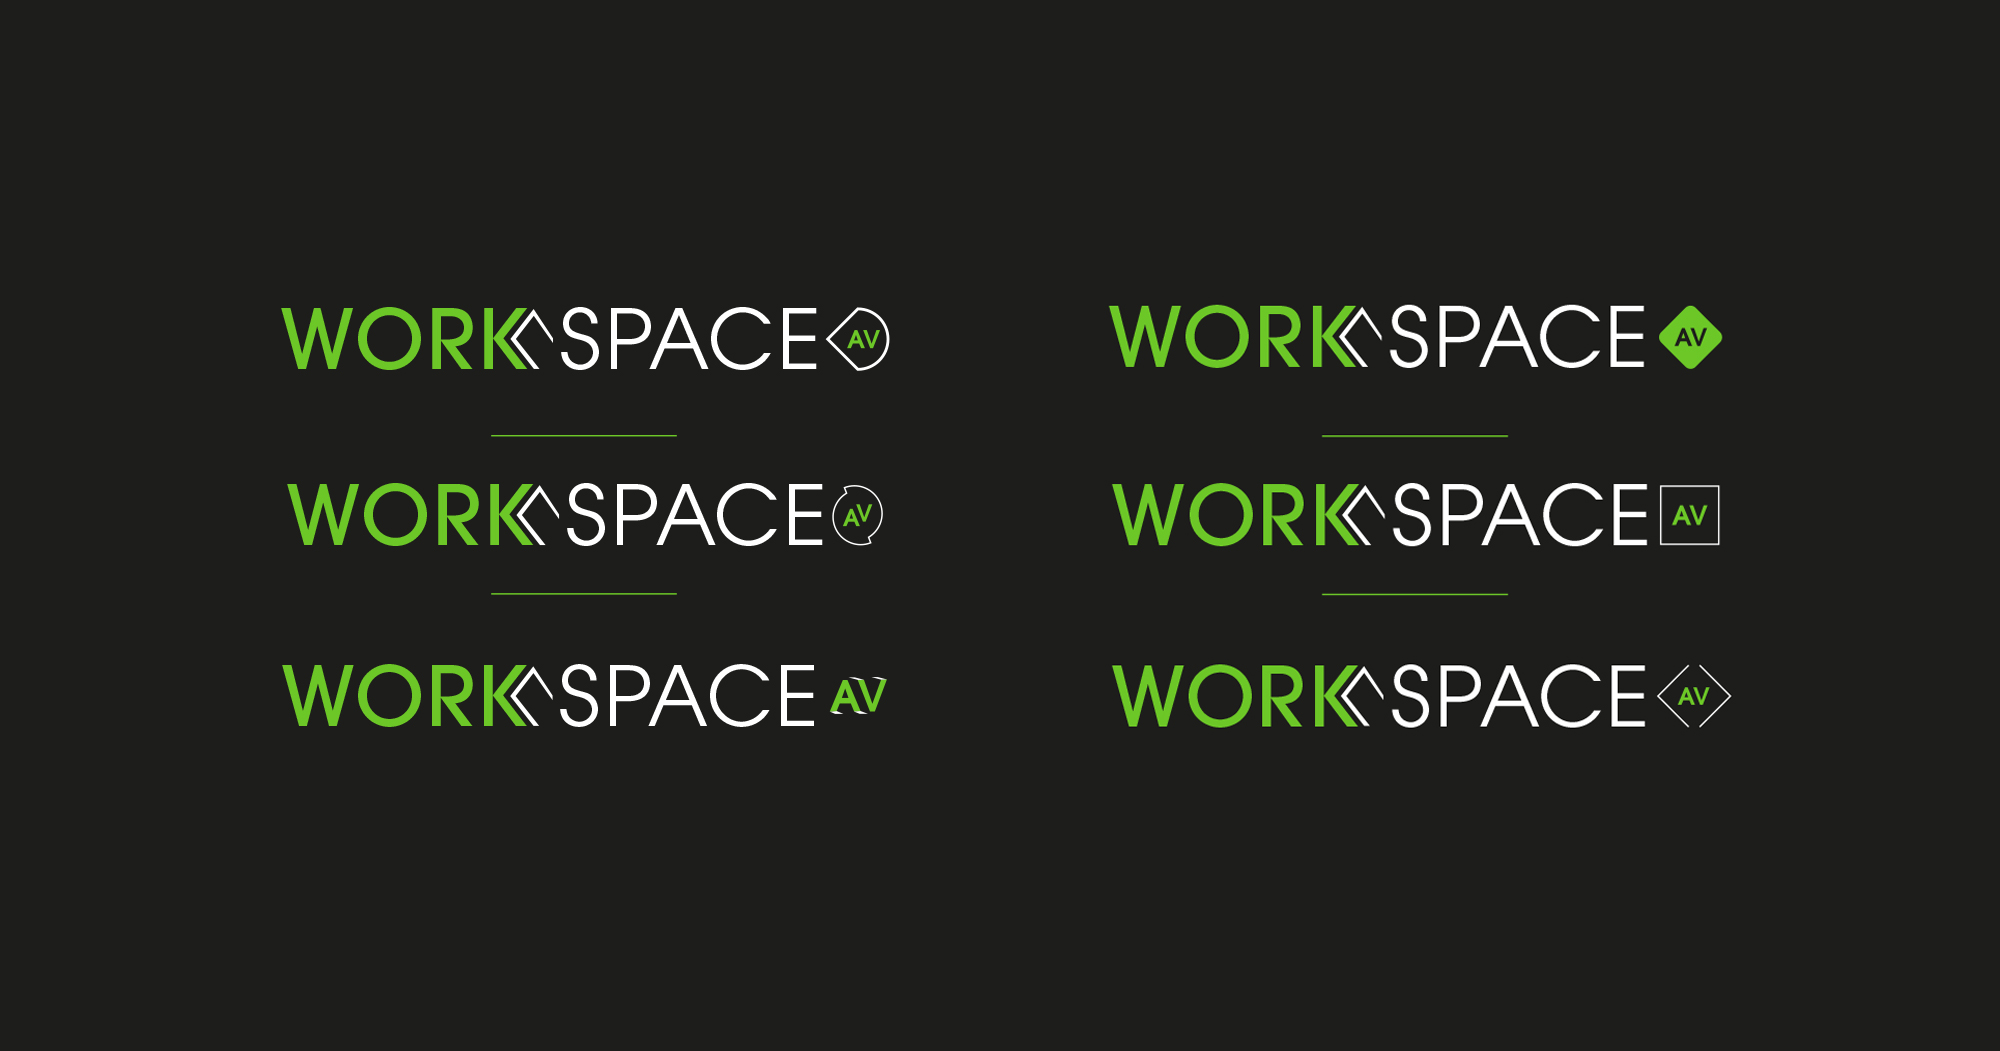 Workspace-Slide-2-v2